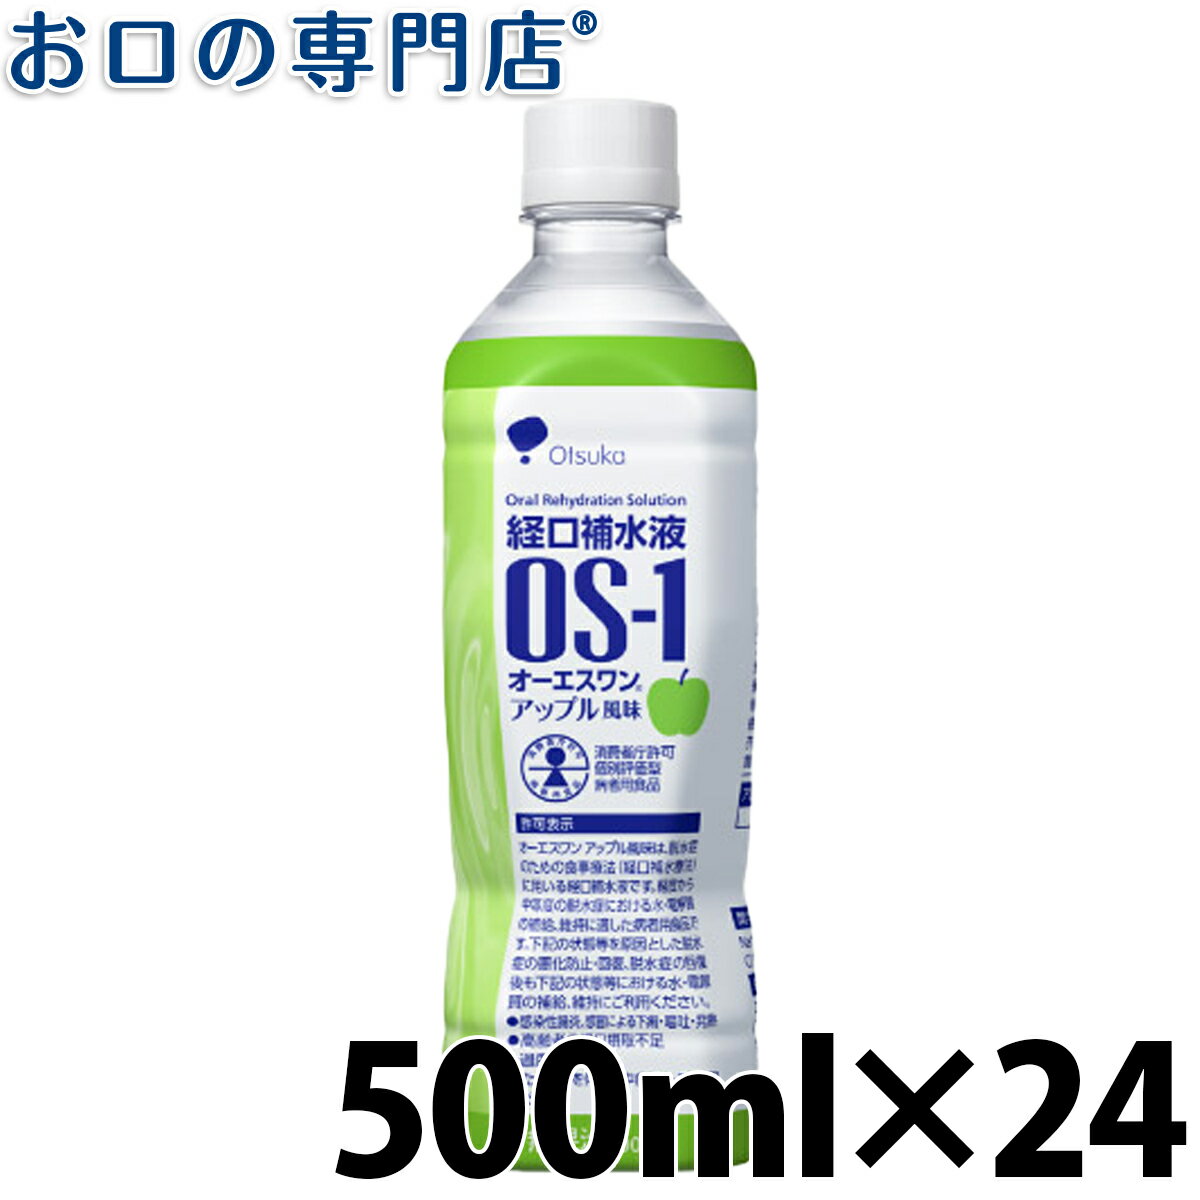  経口補水液 OS-1(オーエスワン) 500ml アップル風味 ×24本